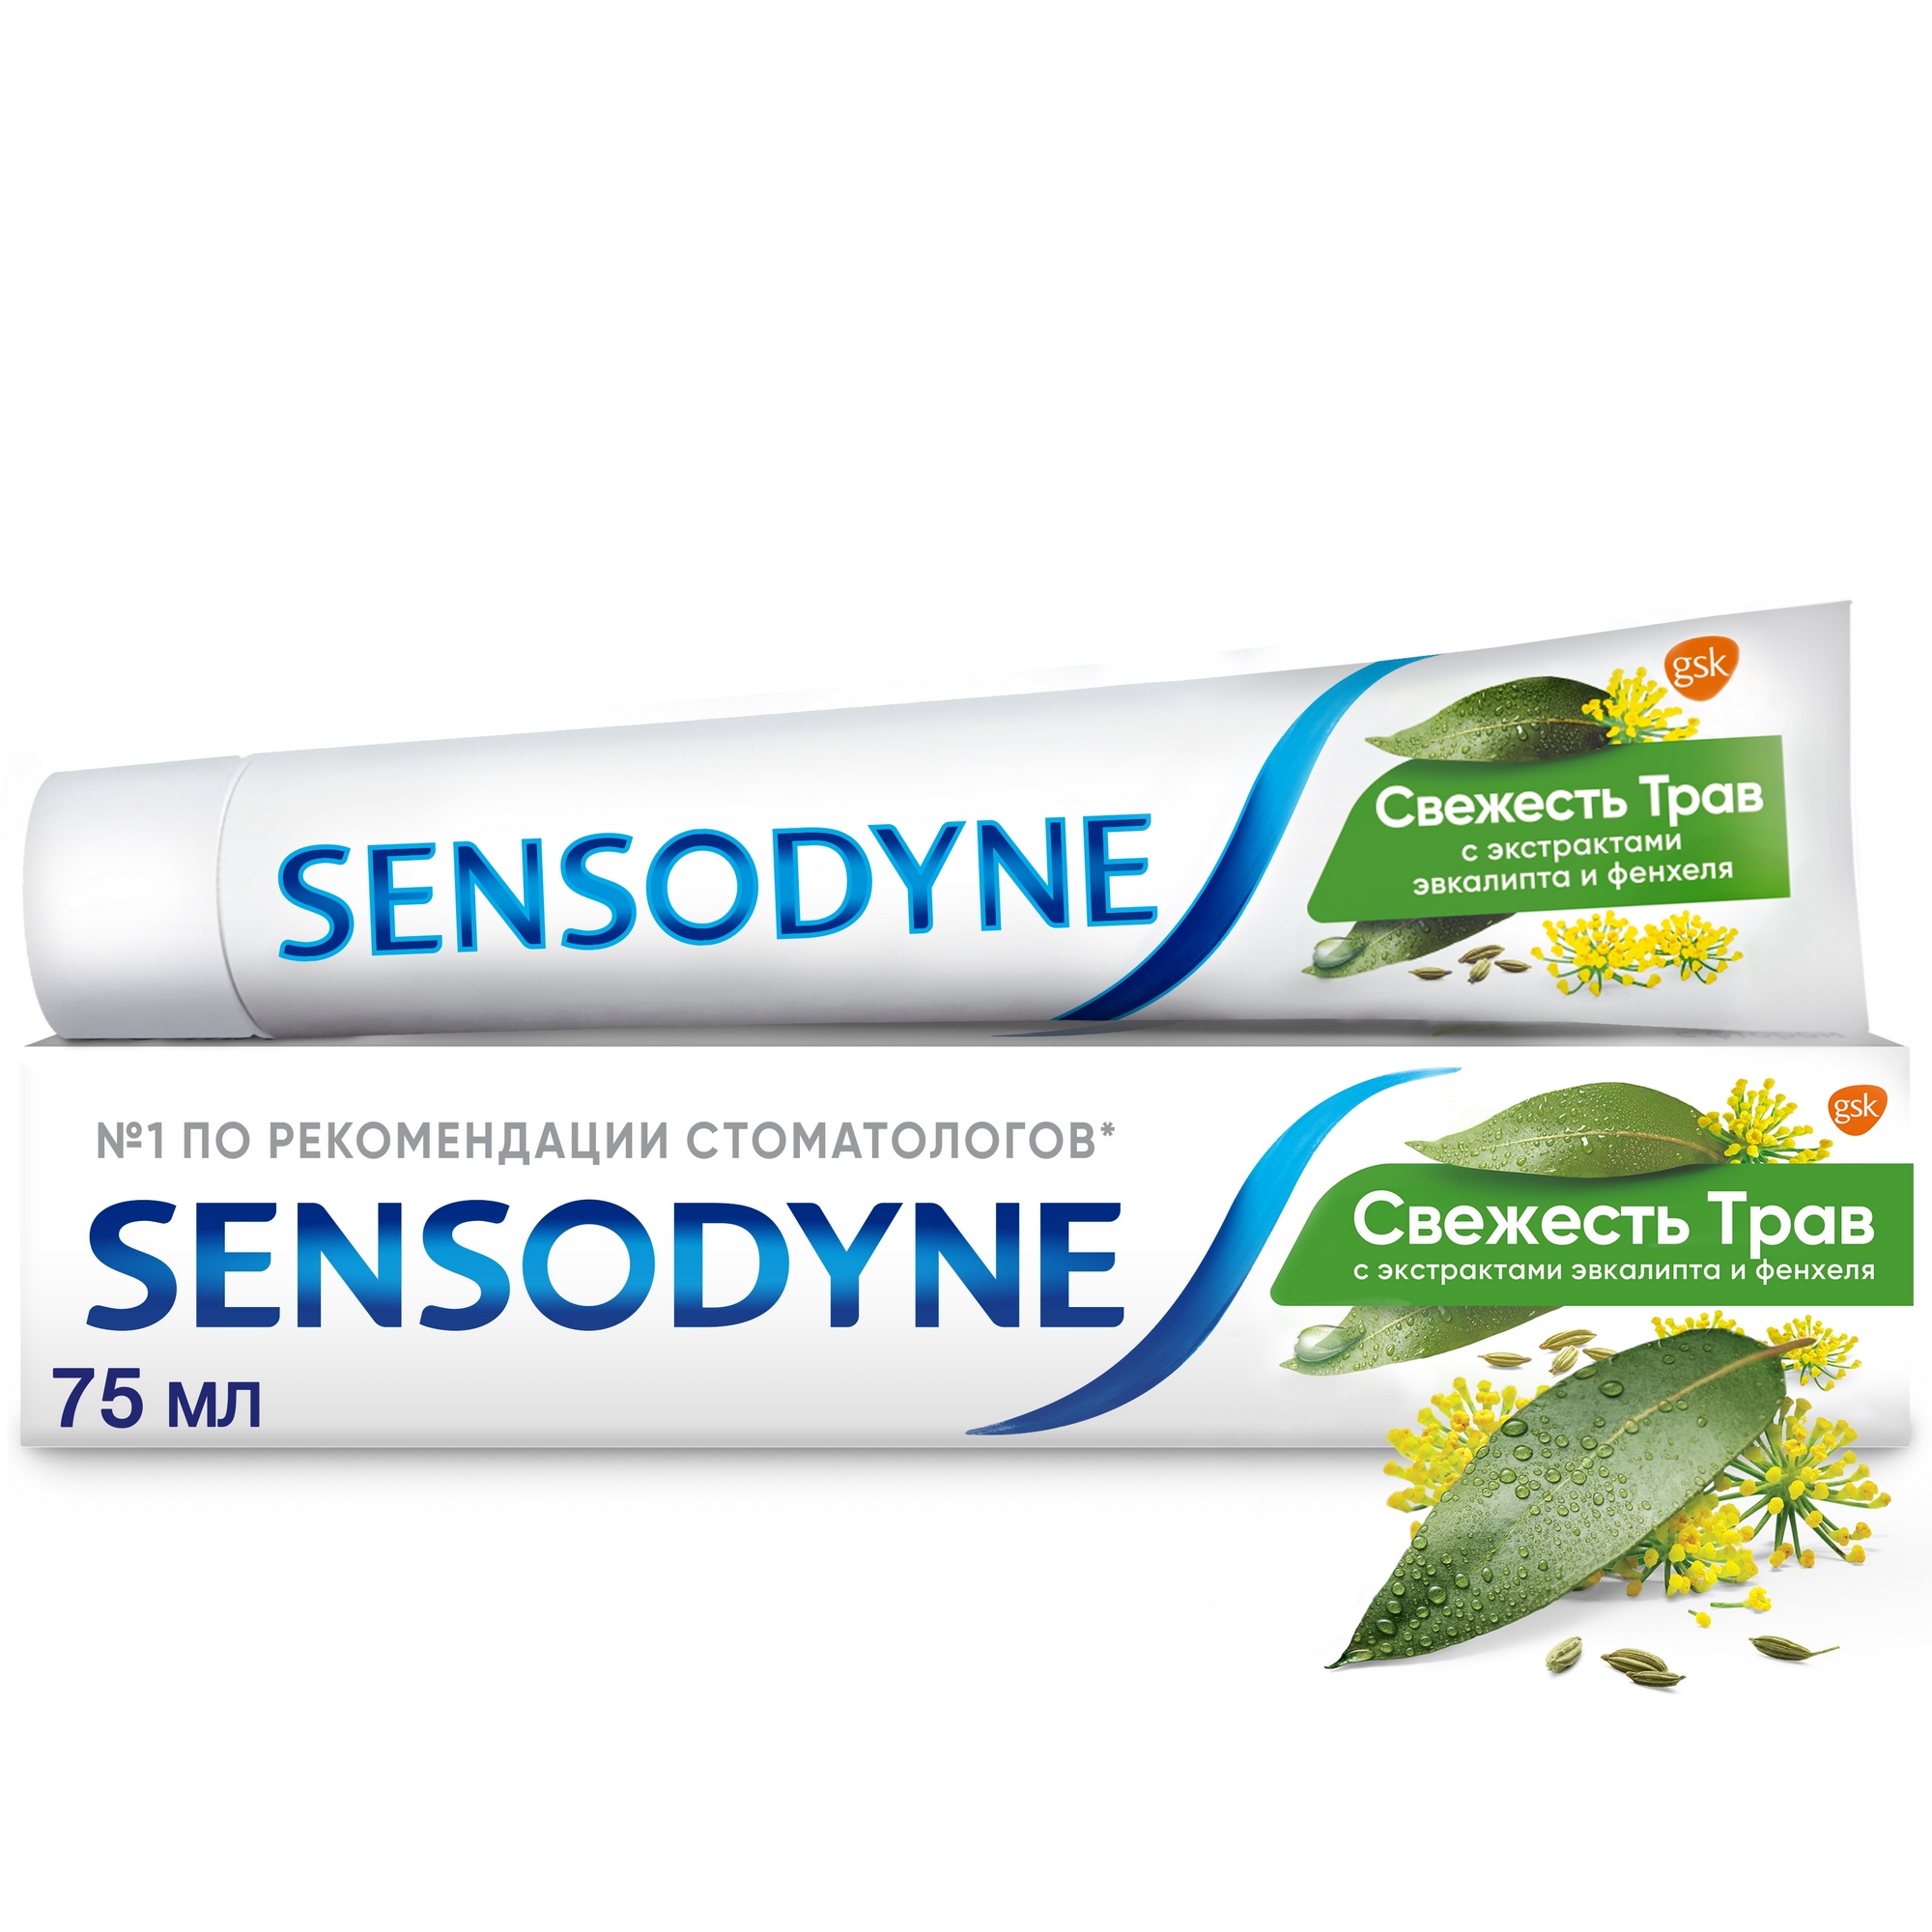 Паста зубная Sensodyne Свежесть трав 75 мл зубная паста sensodyne восстановление и защита 75мл p70618 pns7061800